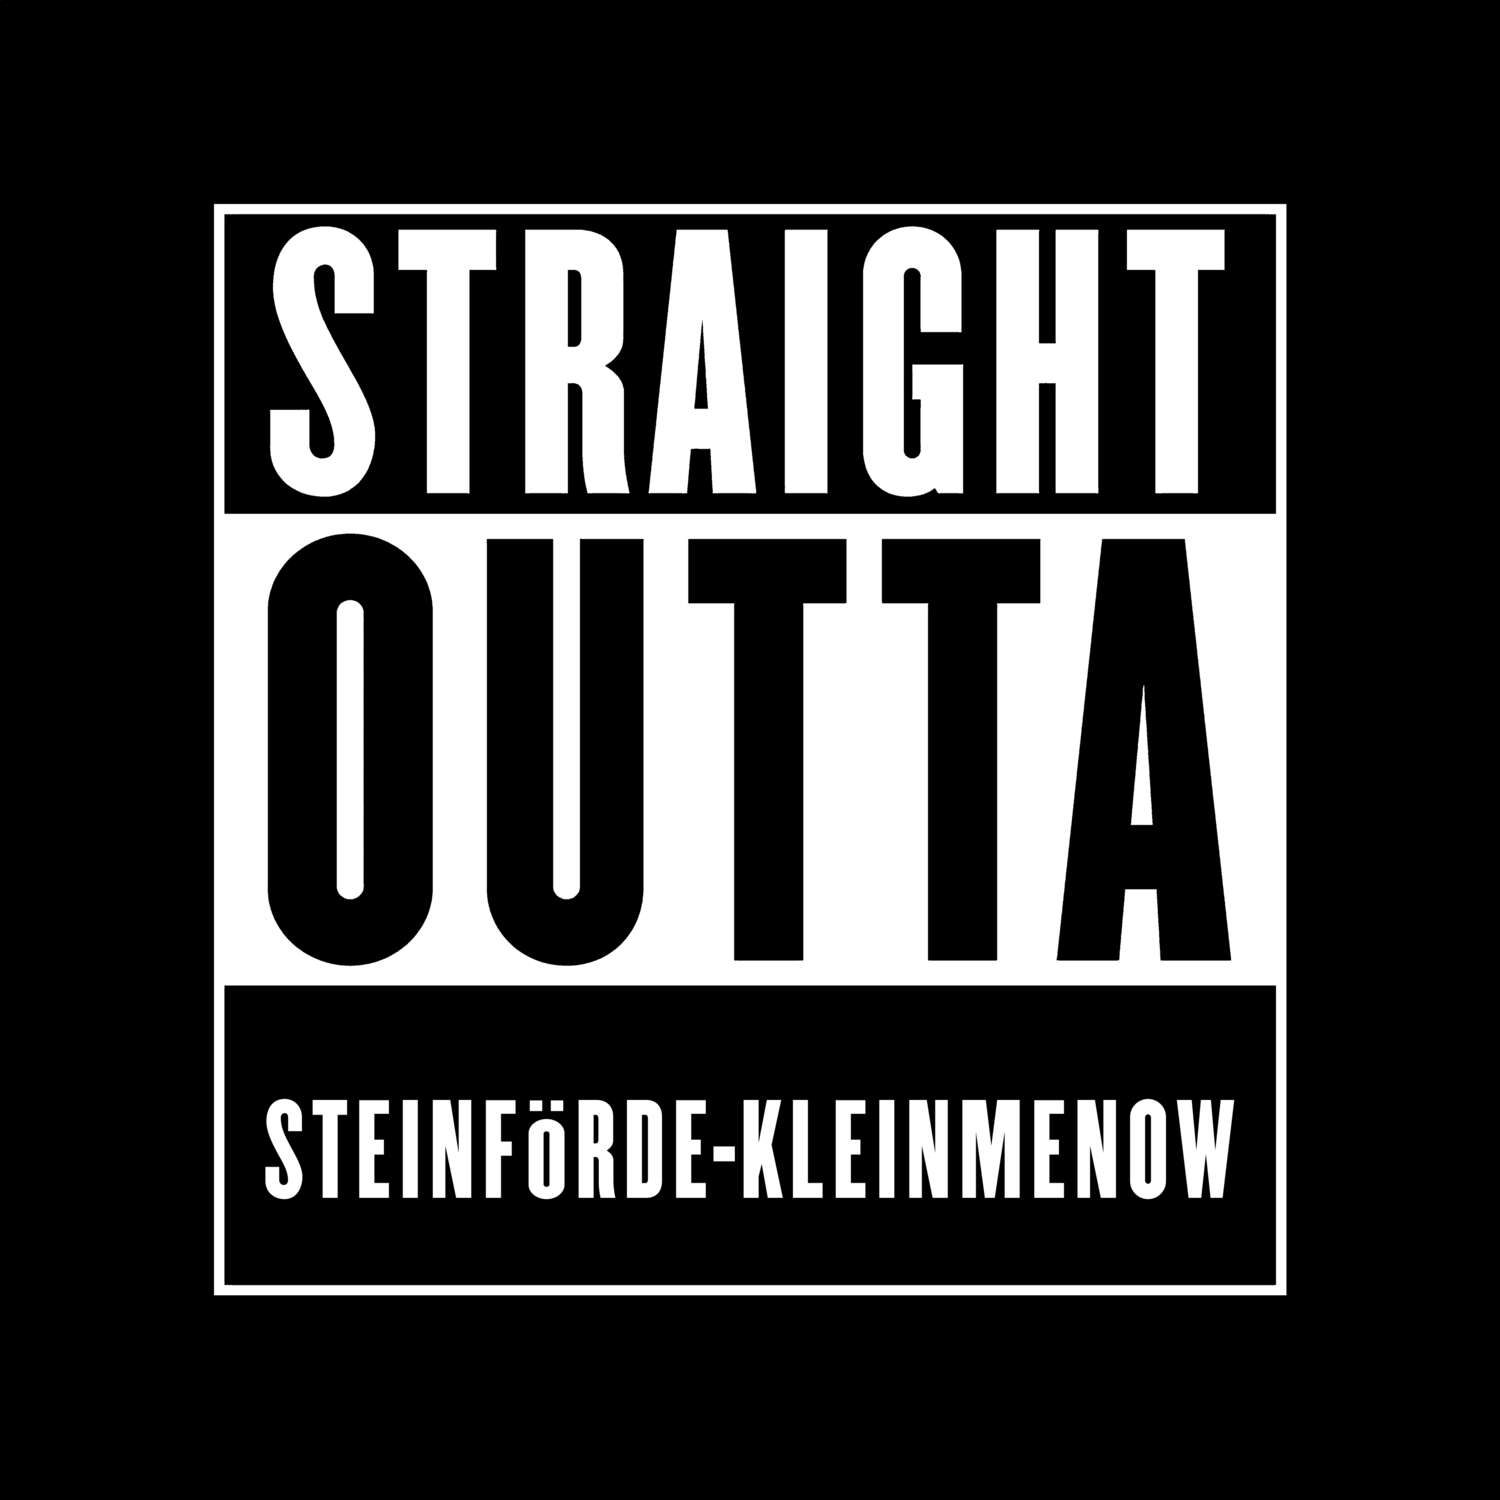 Steinförde-Kleinmenow T-Shirt »Straight Outta«